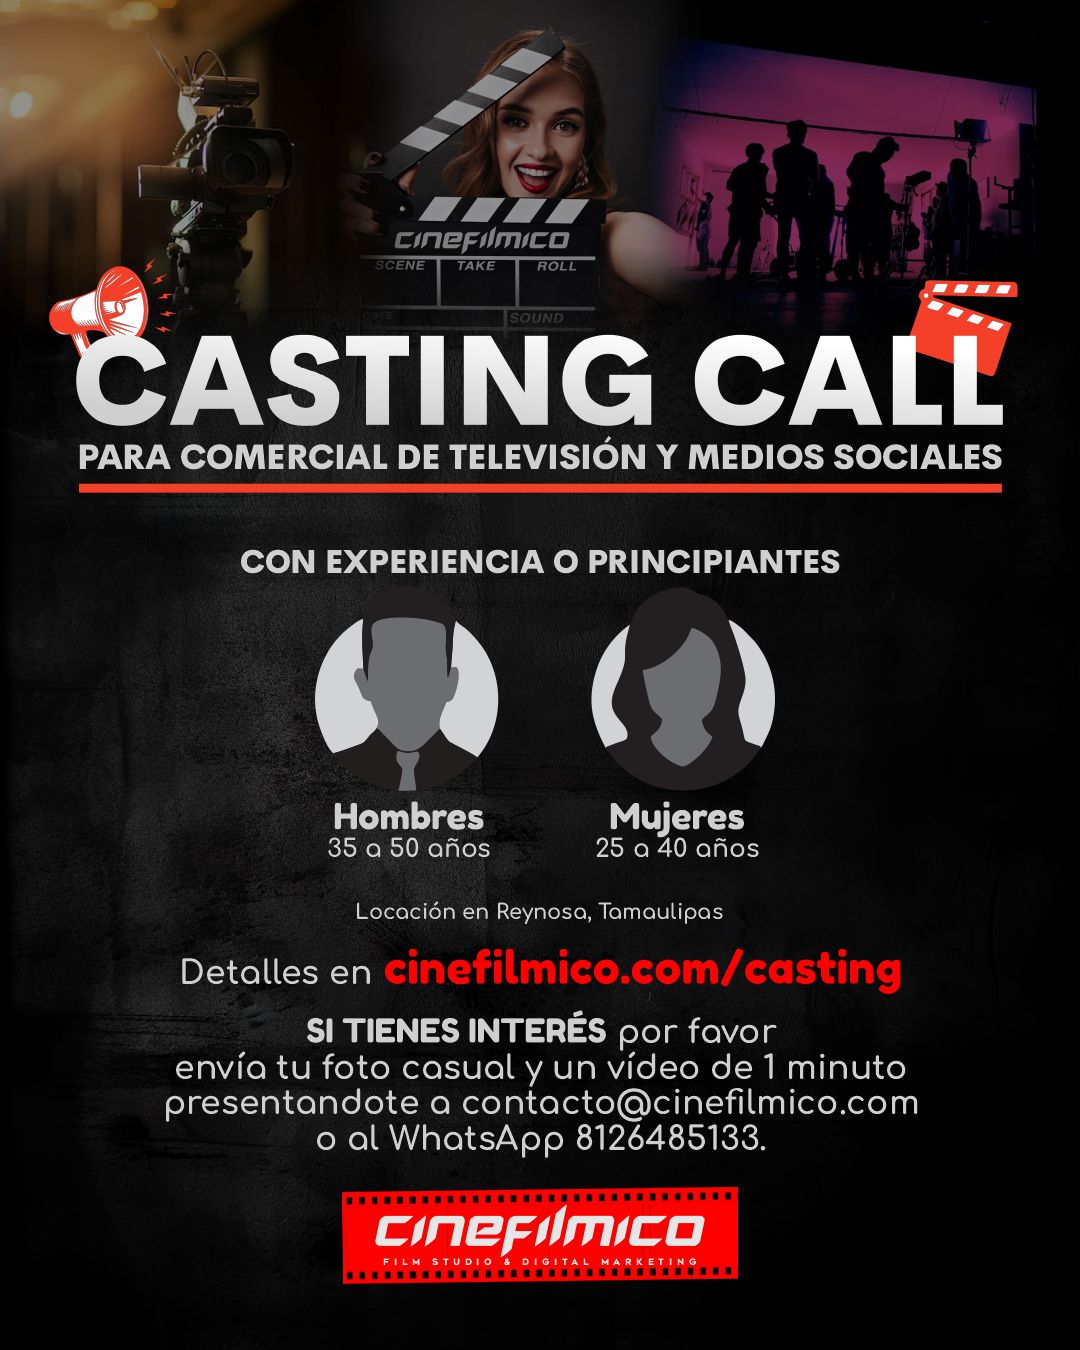 Oportunidad para quienes aspiran a ser actrices o actores, esta es tu oportunidad de aparecer en un comercial para televisión, películas y medios sociales, con CInefilmico Film Studio.